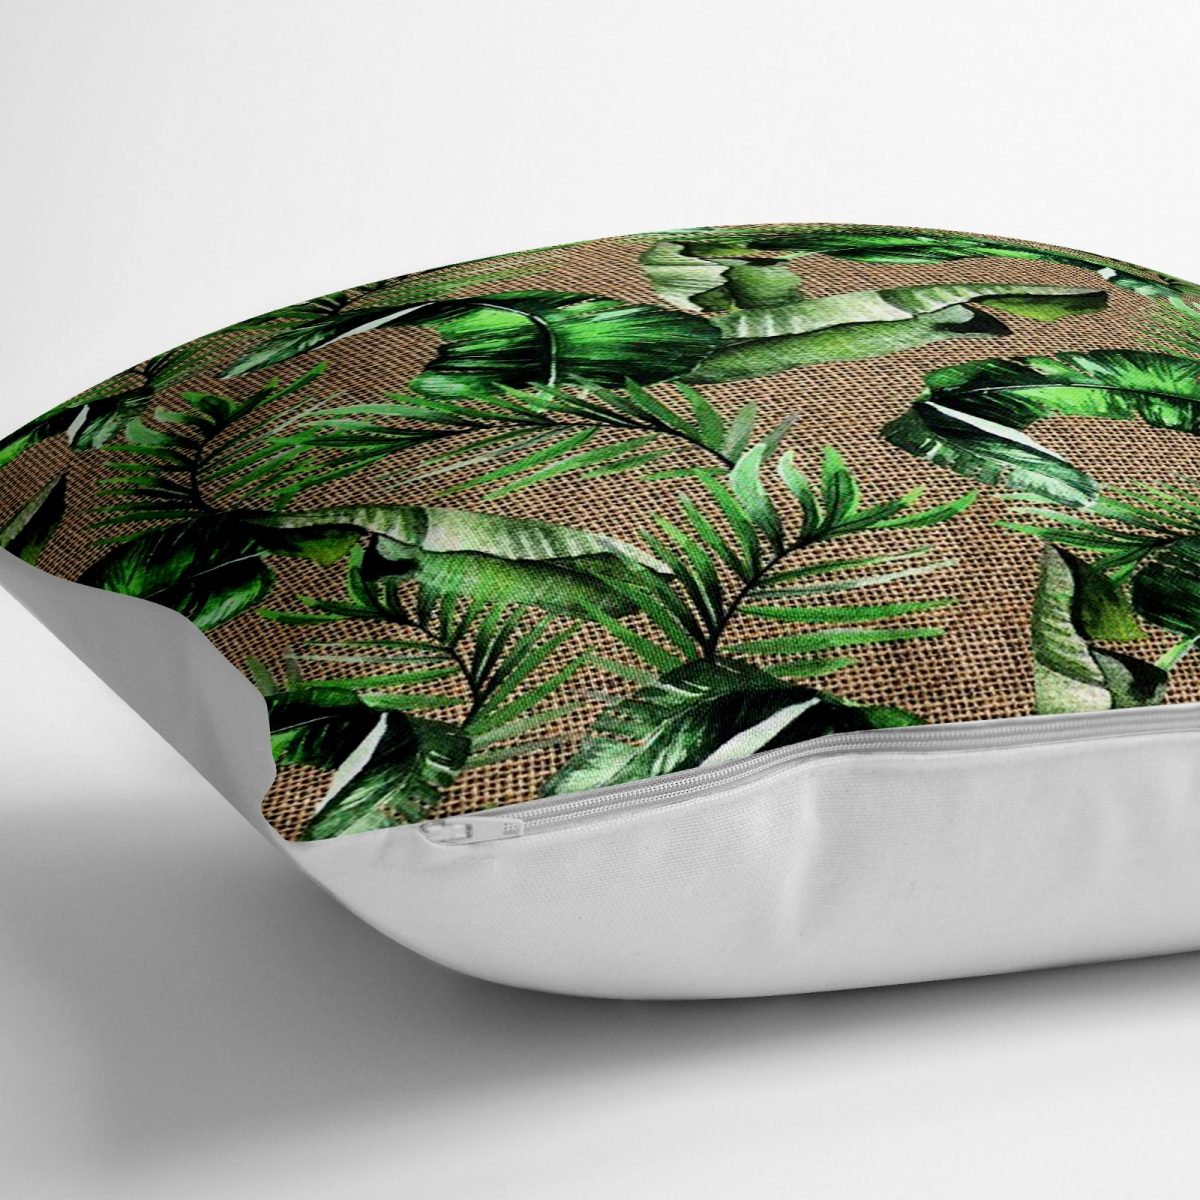 Çuval Zeminde Yeşil Yaprak Desenli Özel Tasarım Yer Minderi - 70 x 70 cm Realhomes